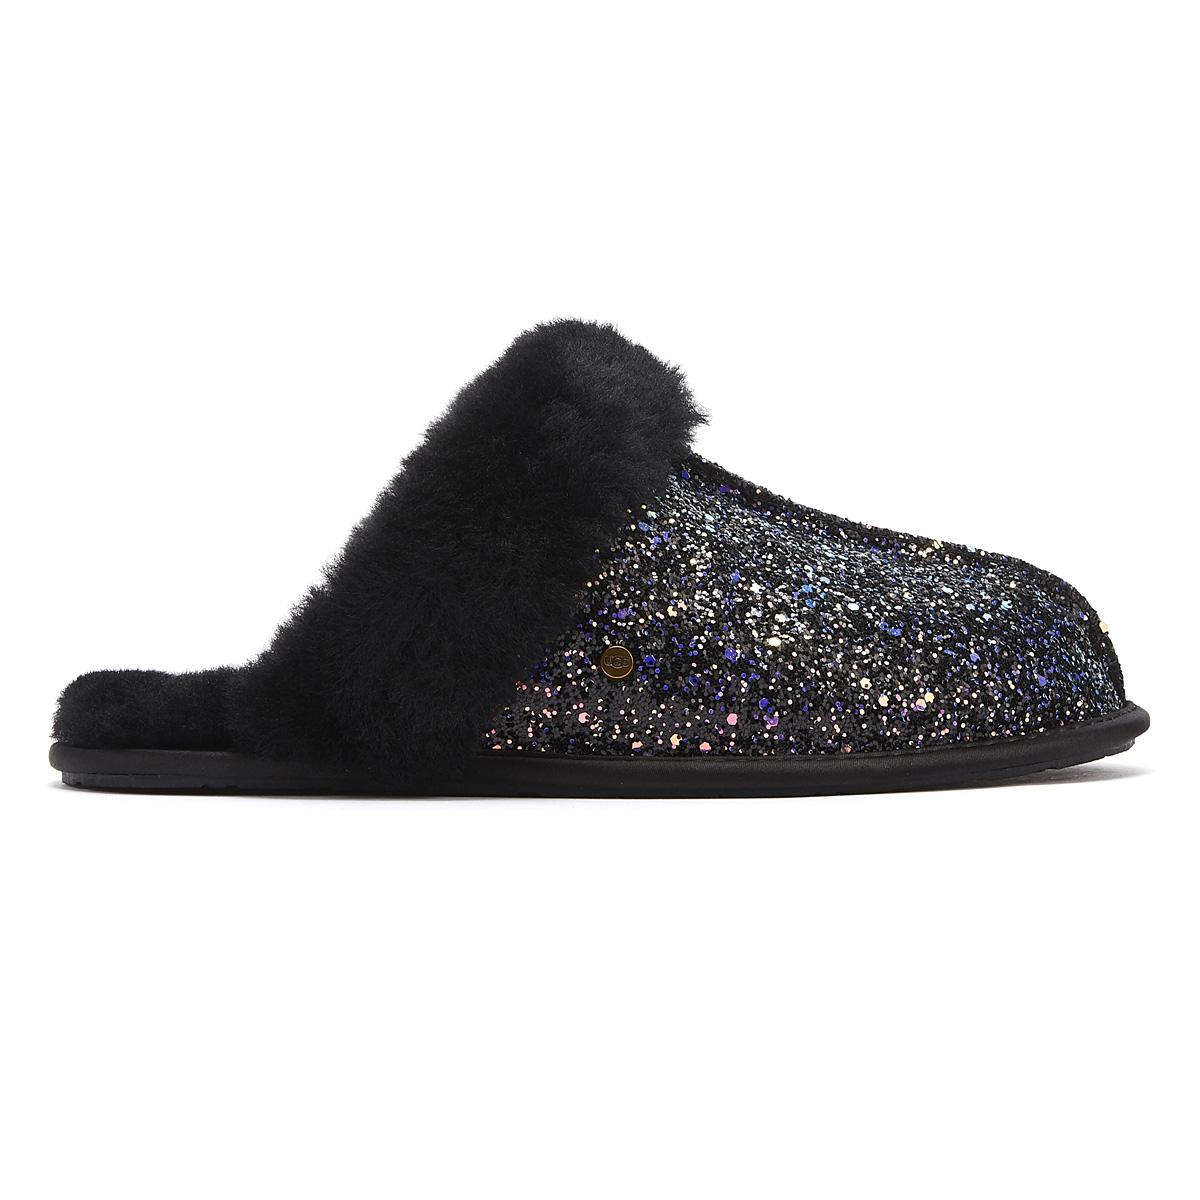 ugg slippers black glitter